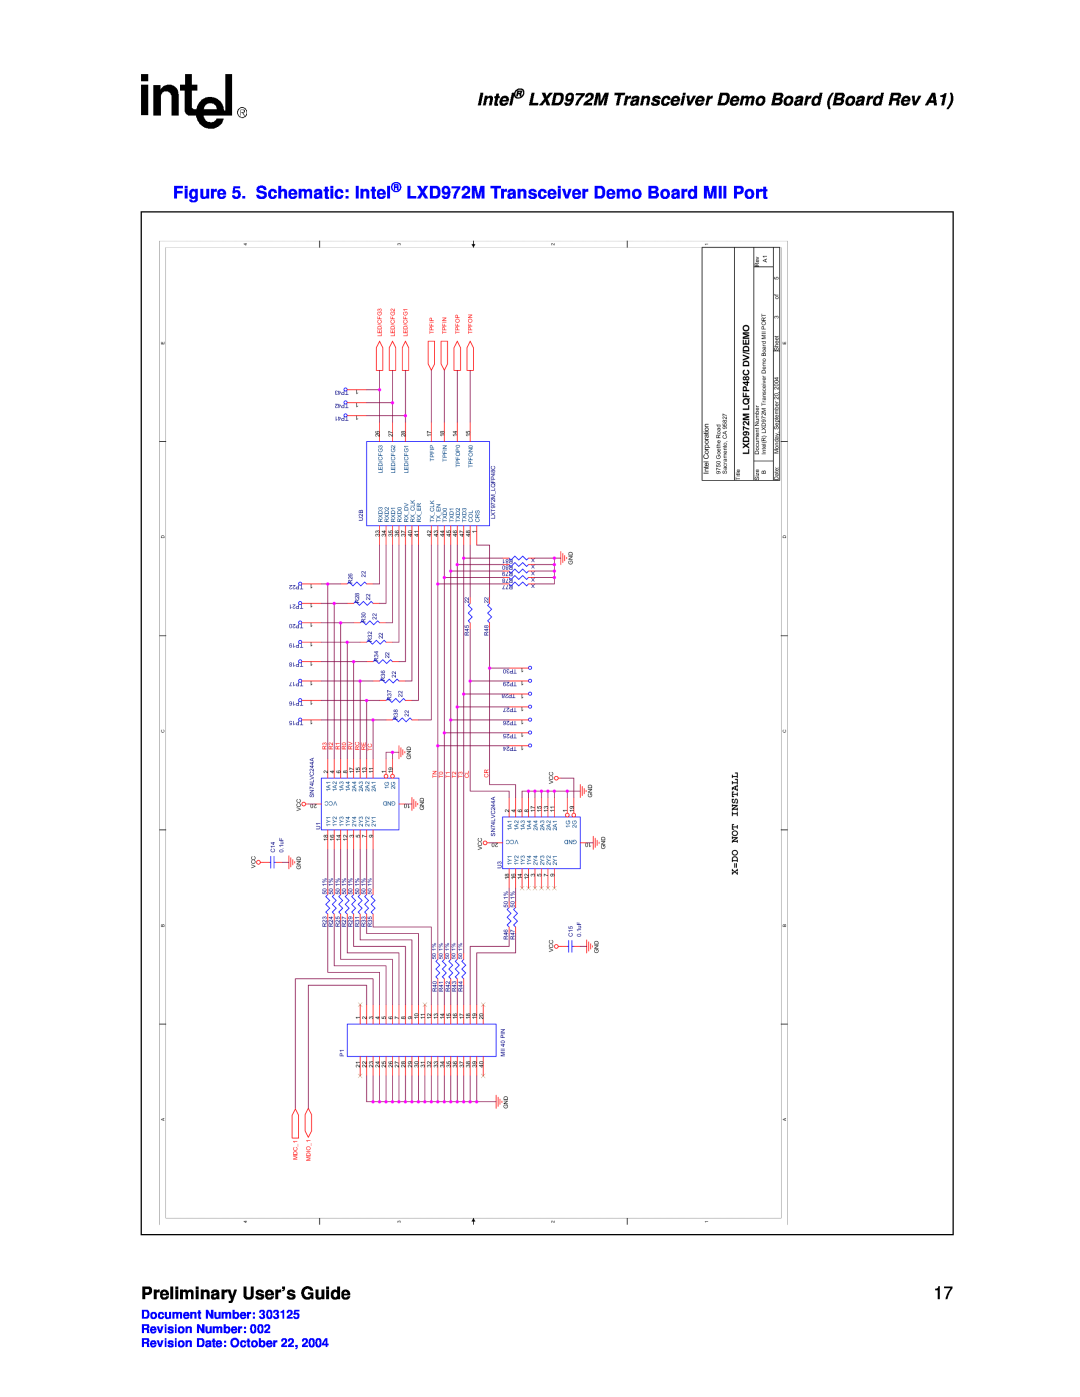 Intel LXD972M manual Preliminary User’s, Transceiver Demo, Board Board Rev A1, Schematic Intel, Demo Board MII Port 